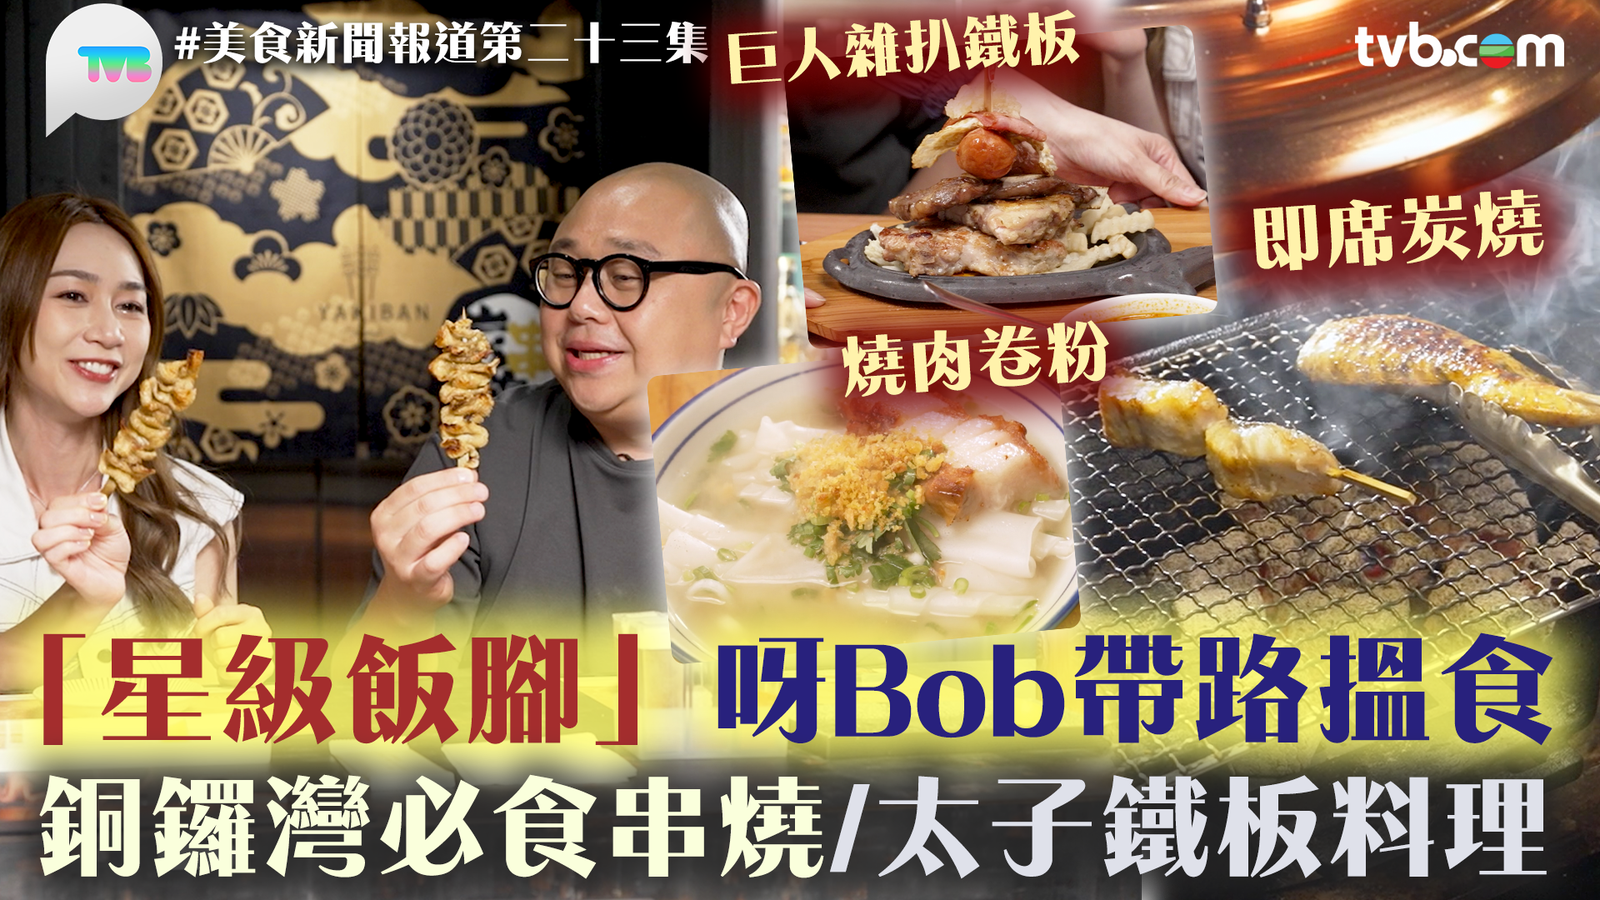 美食新聞報道第｜全新環節「星級飯腳」 跟報料市民林先生 大嘆「阿Bob餐」！